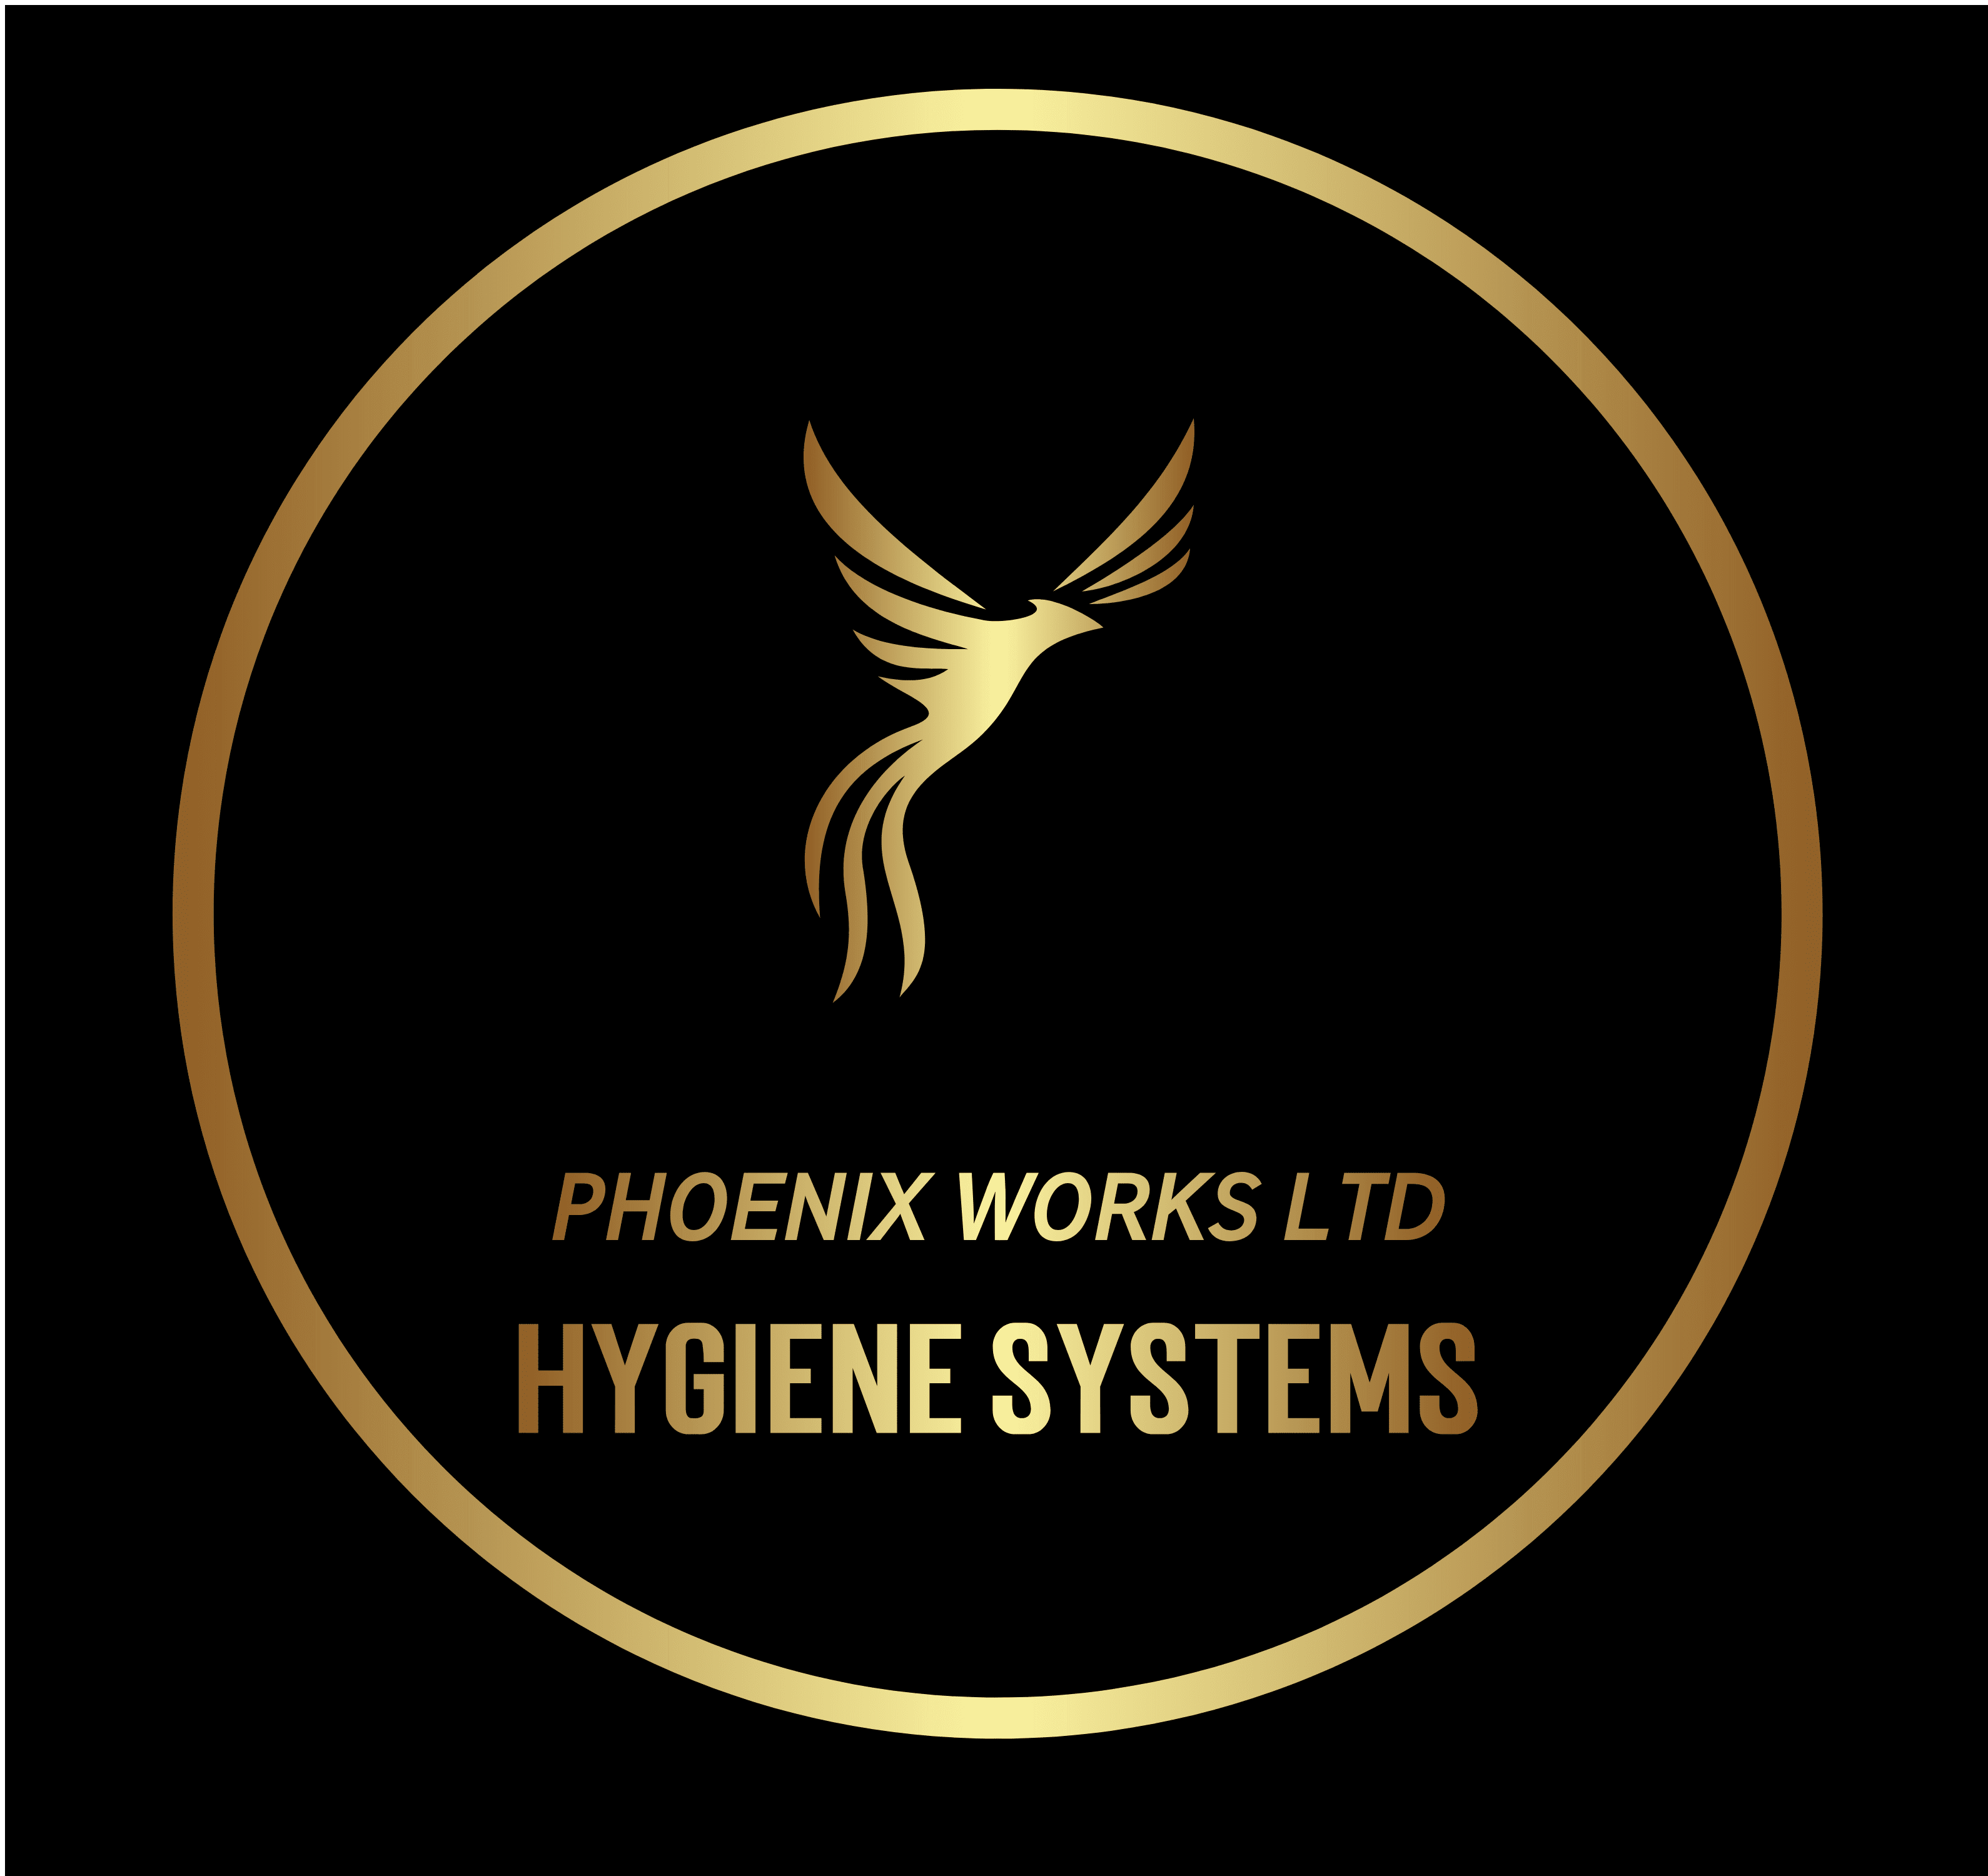 Phoenix Works Ltd